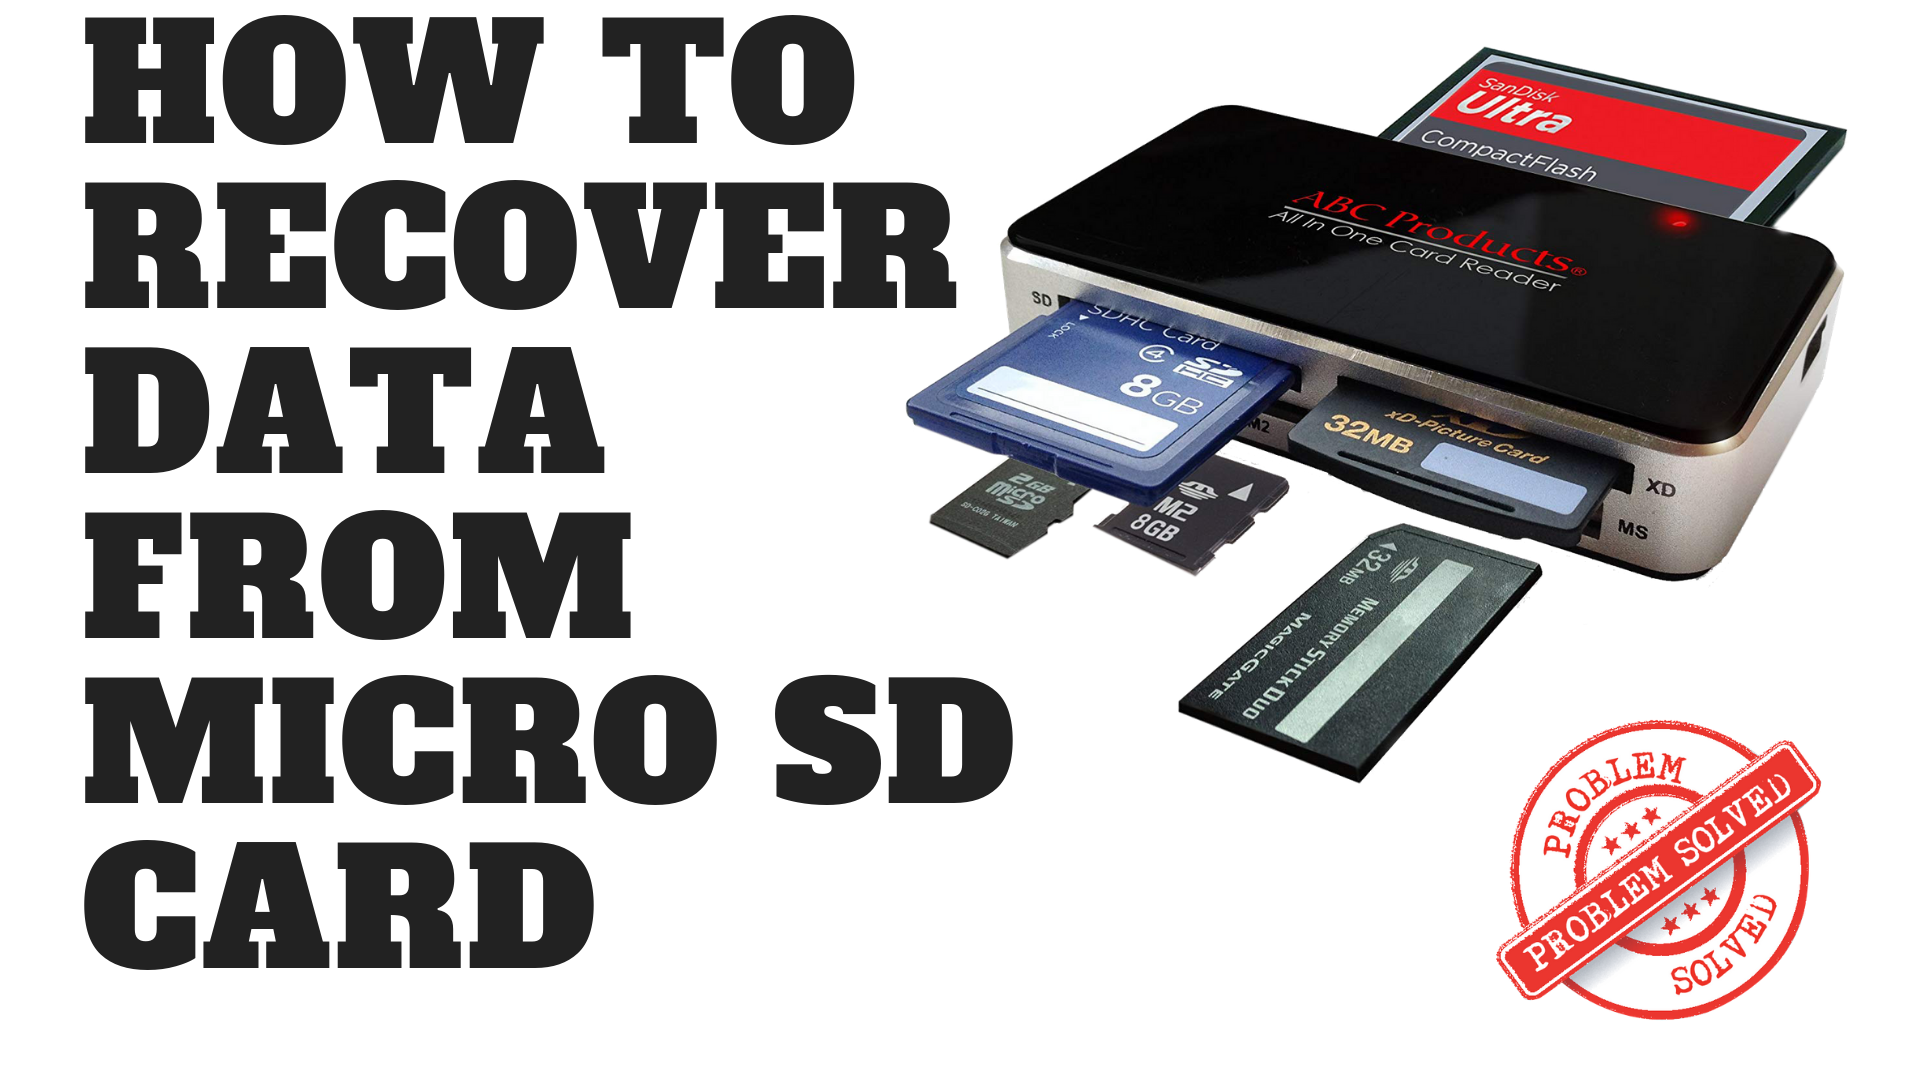 micro sd card repair software full version